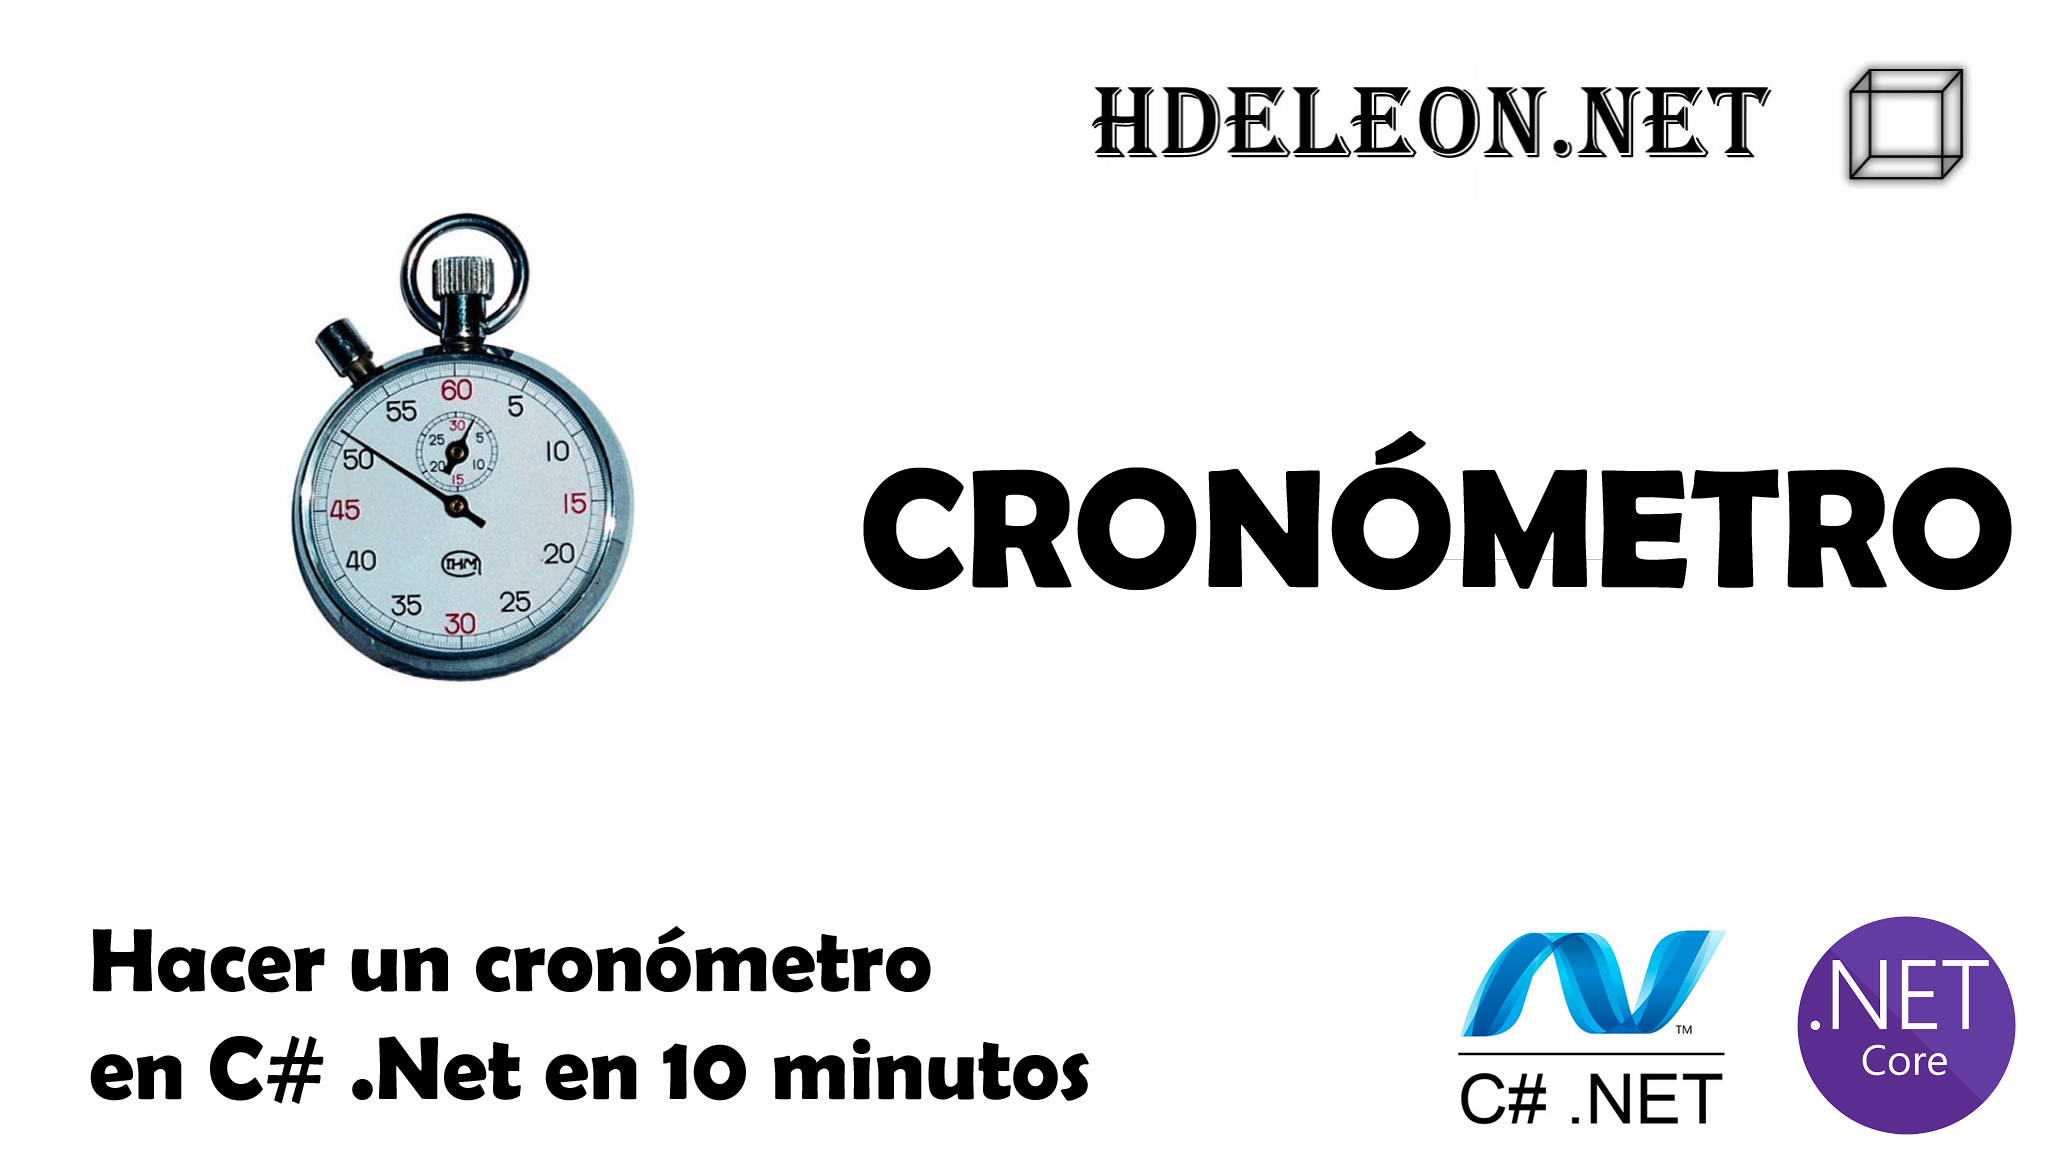 Hacer un cronómetro en C# .Net en 10 minutos, Windows forms, Stopwatch